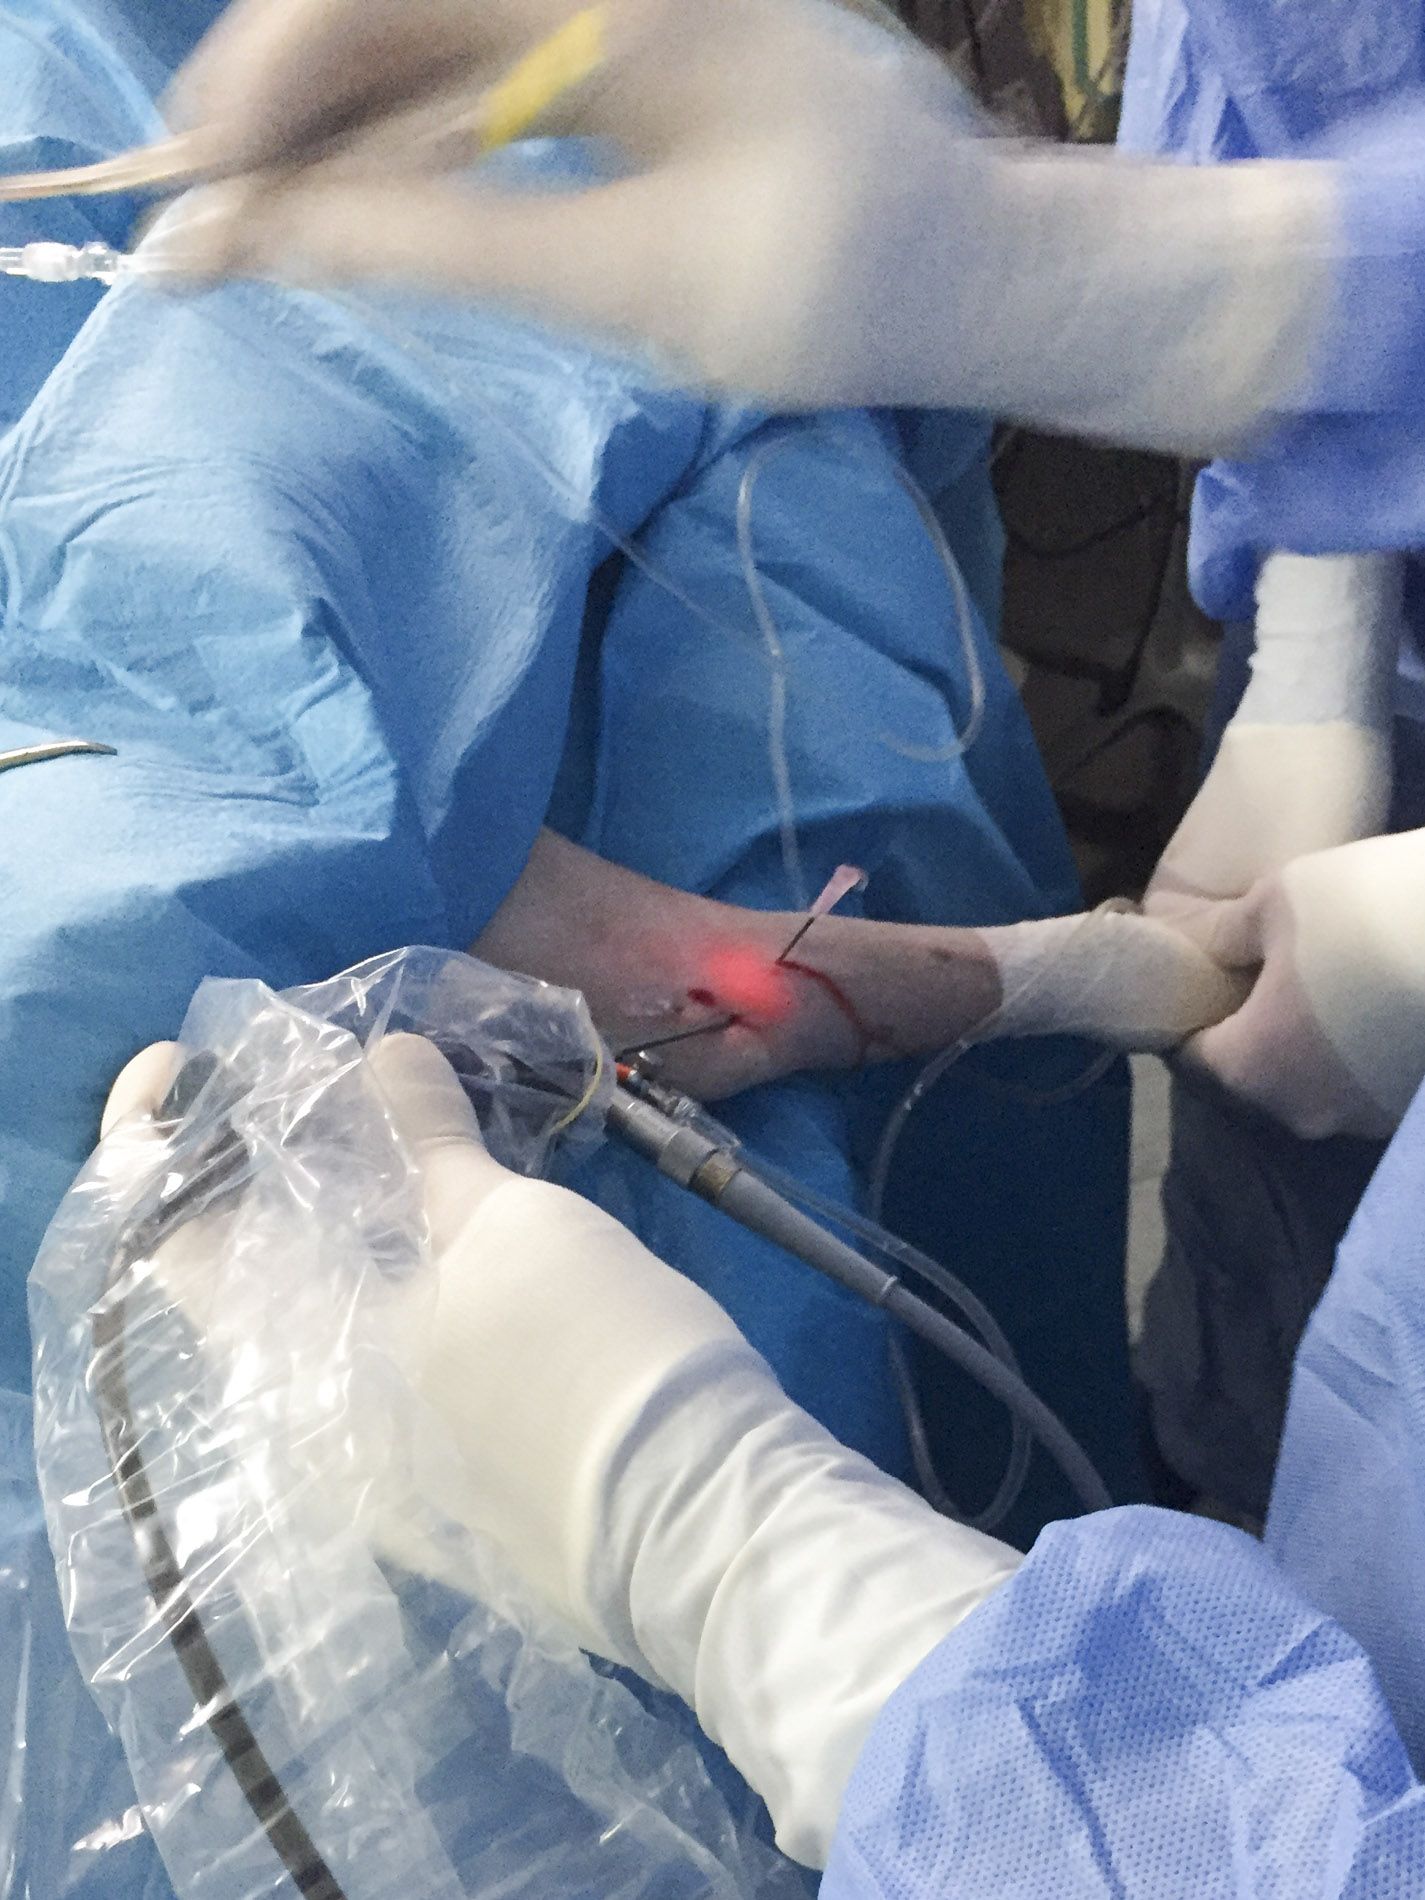 L'endoscopia eseguita dal Centro Veterinario San Filippo utilizza videocamere speciali per raggiungere alcune aree (organi cavi) all'interno del corpo in modo minimamente invasivo.